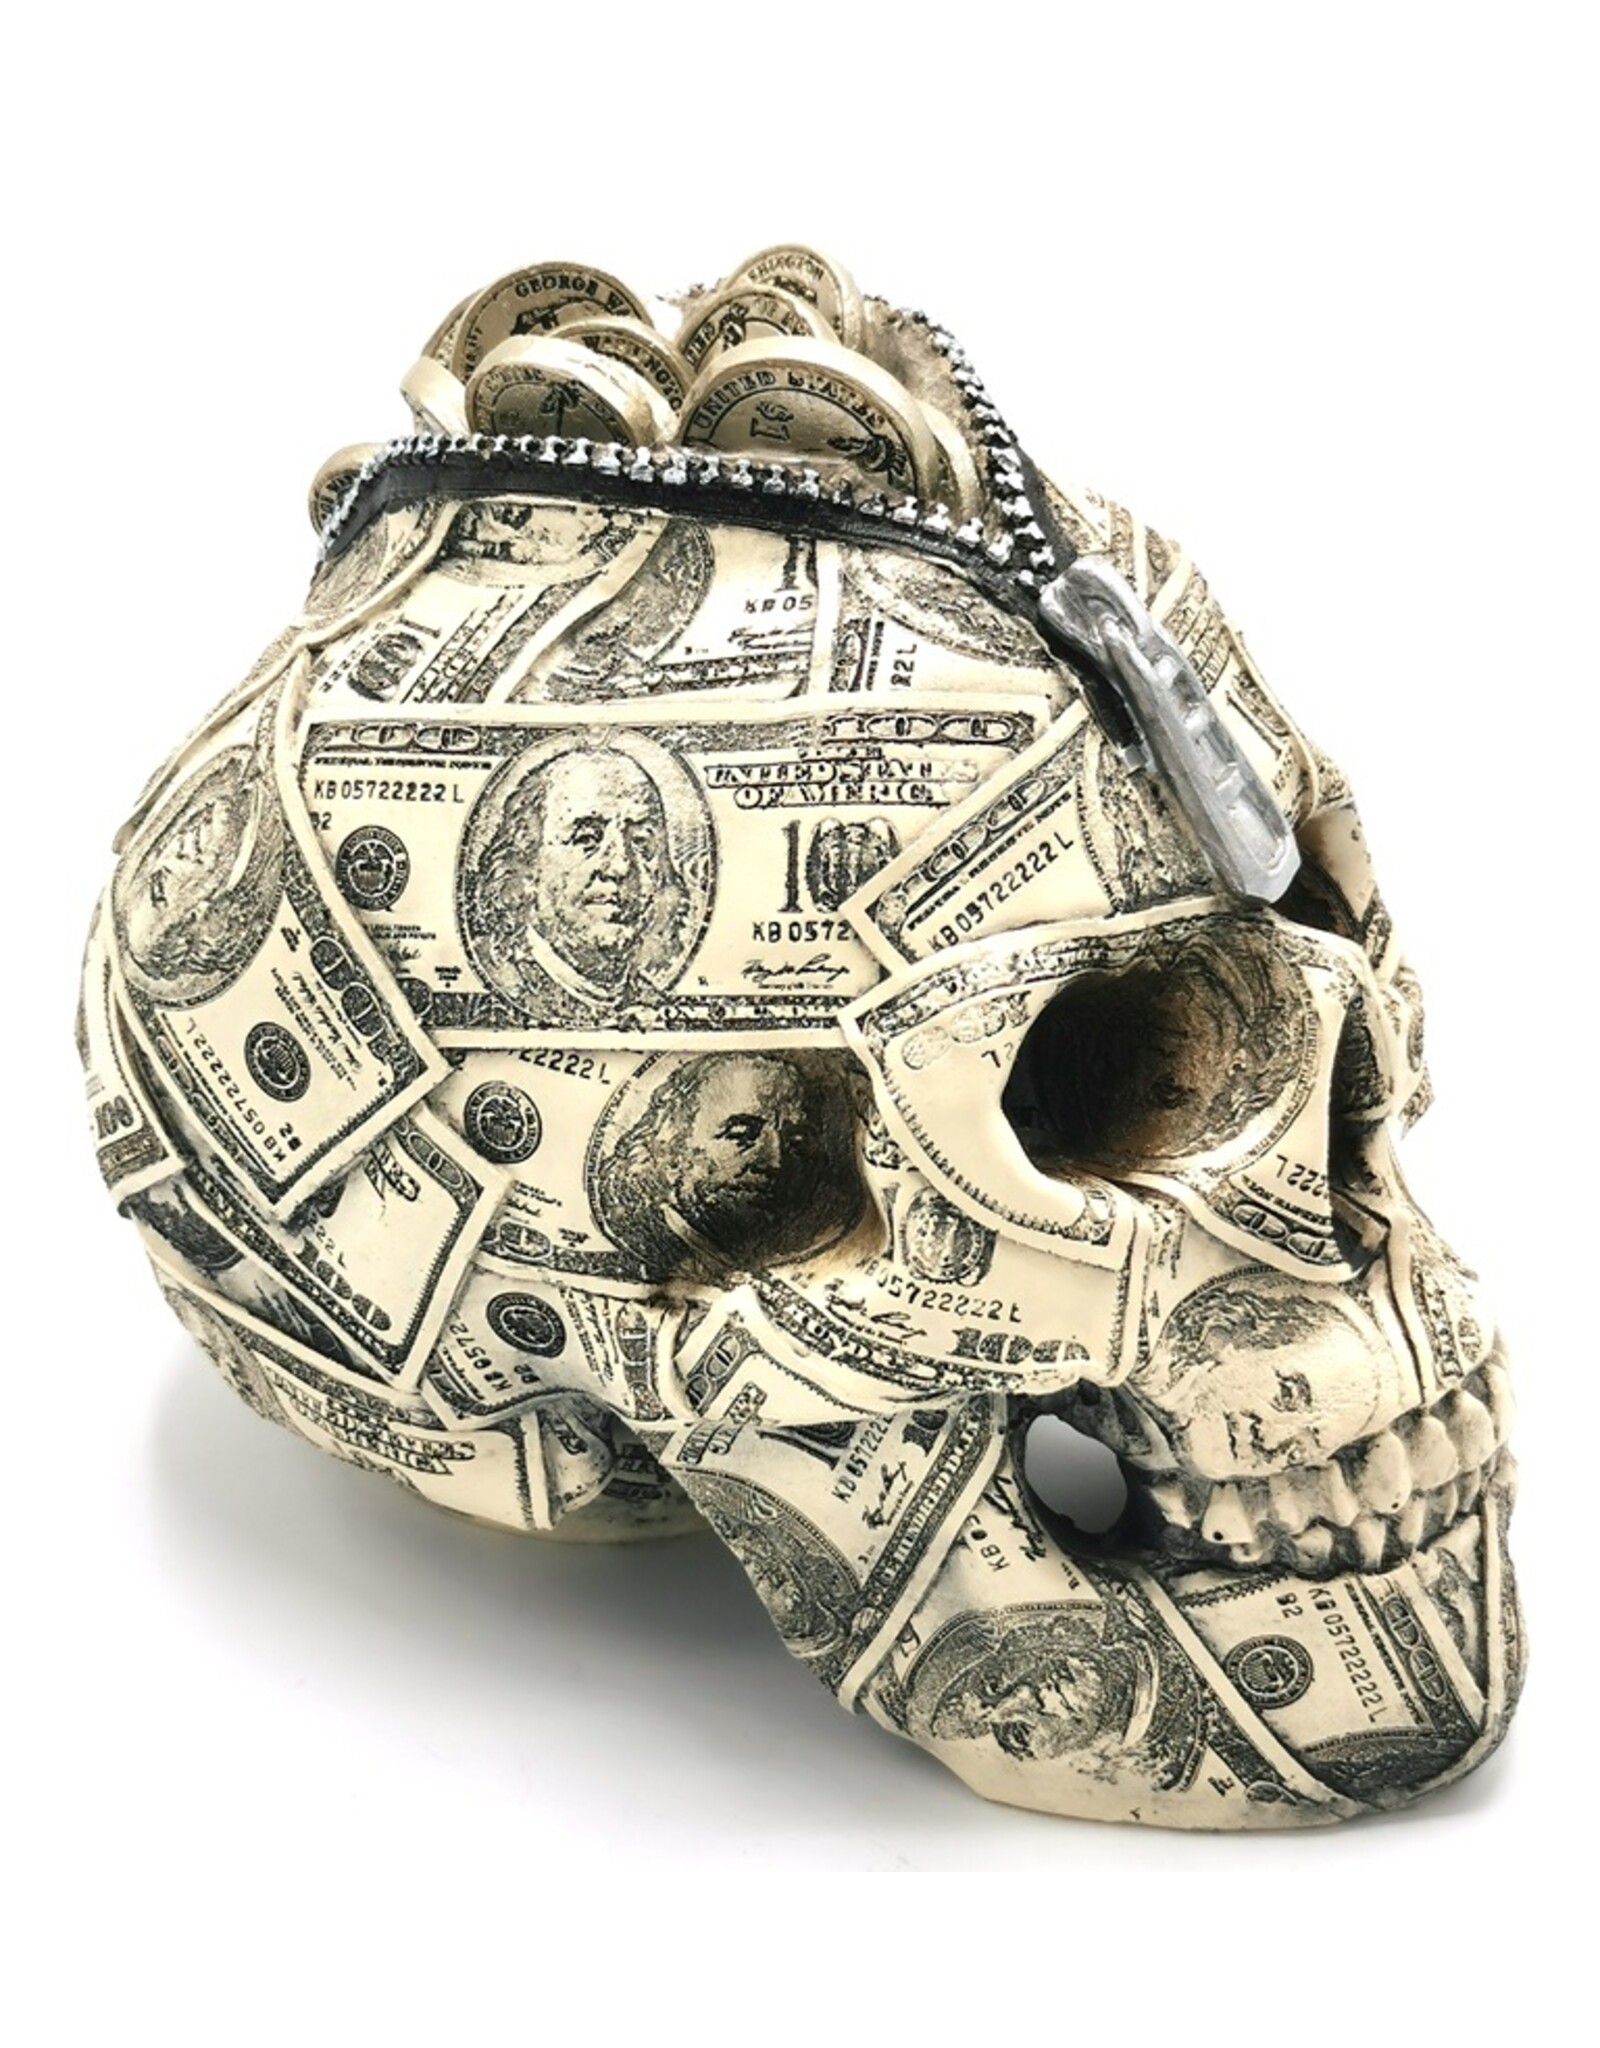 Trukado Skulls - Skull Money Box  Benjamin Franklin 100 Dollar bill